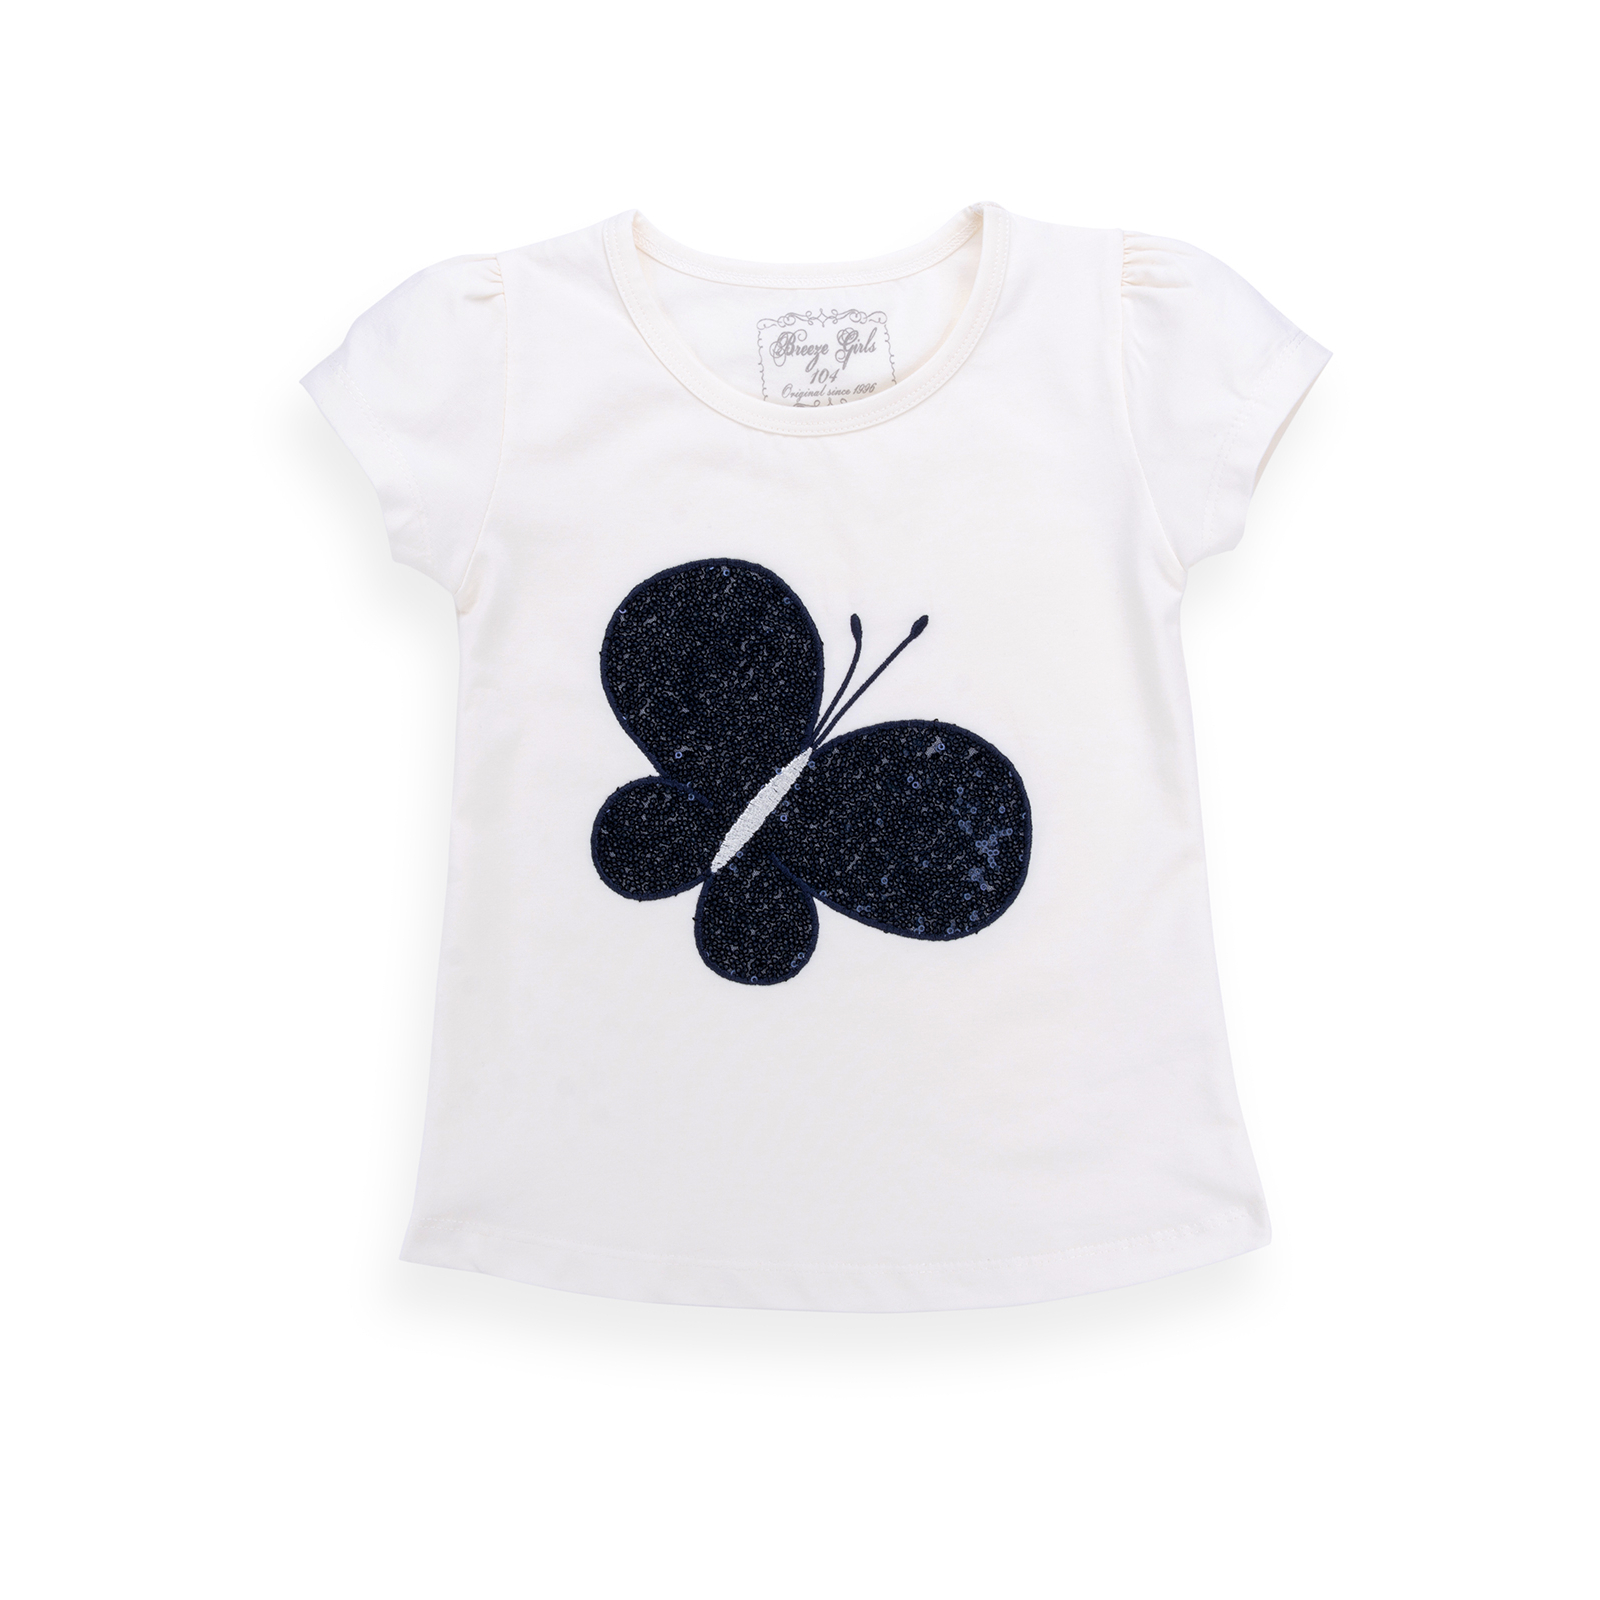 Набор детской одежды Breeze футболка с бабочкой со штанишками (8969-110G-cream) изображение 2